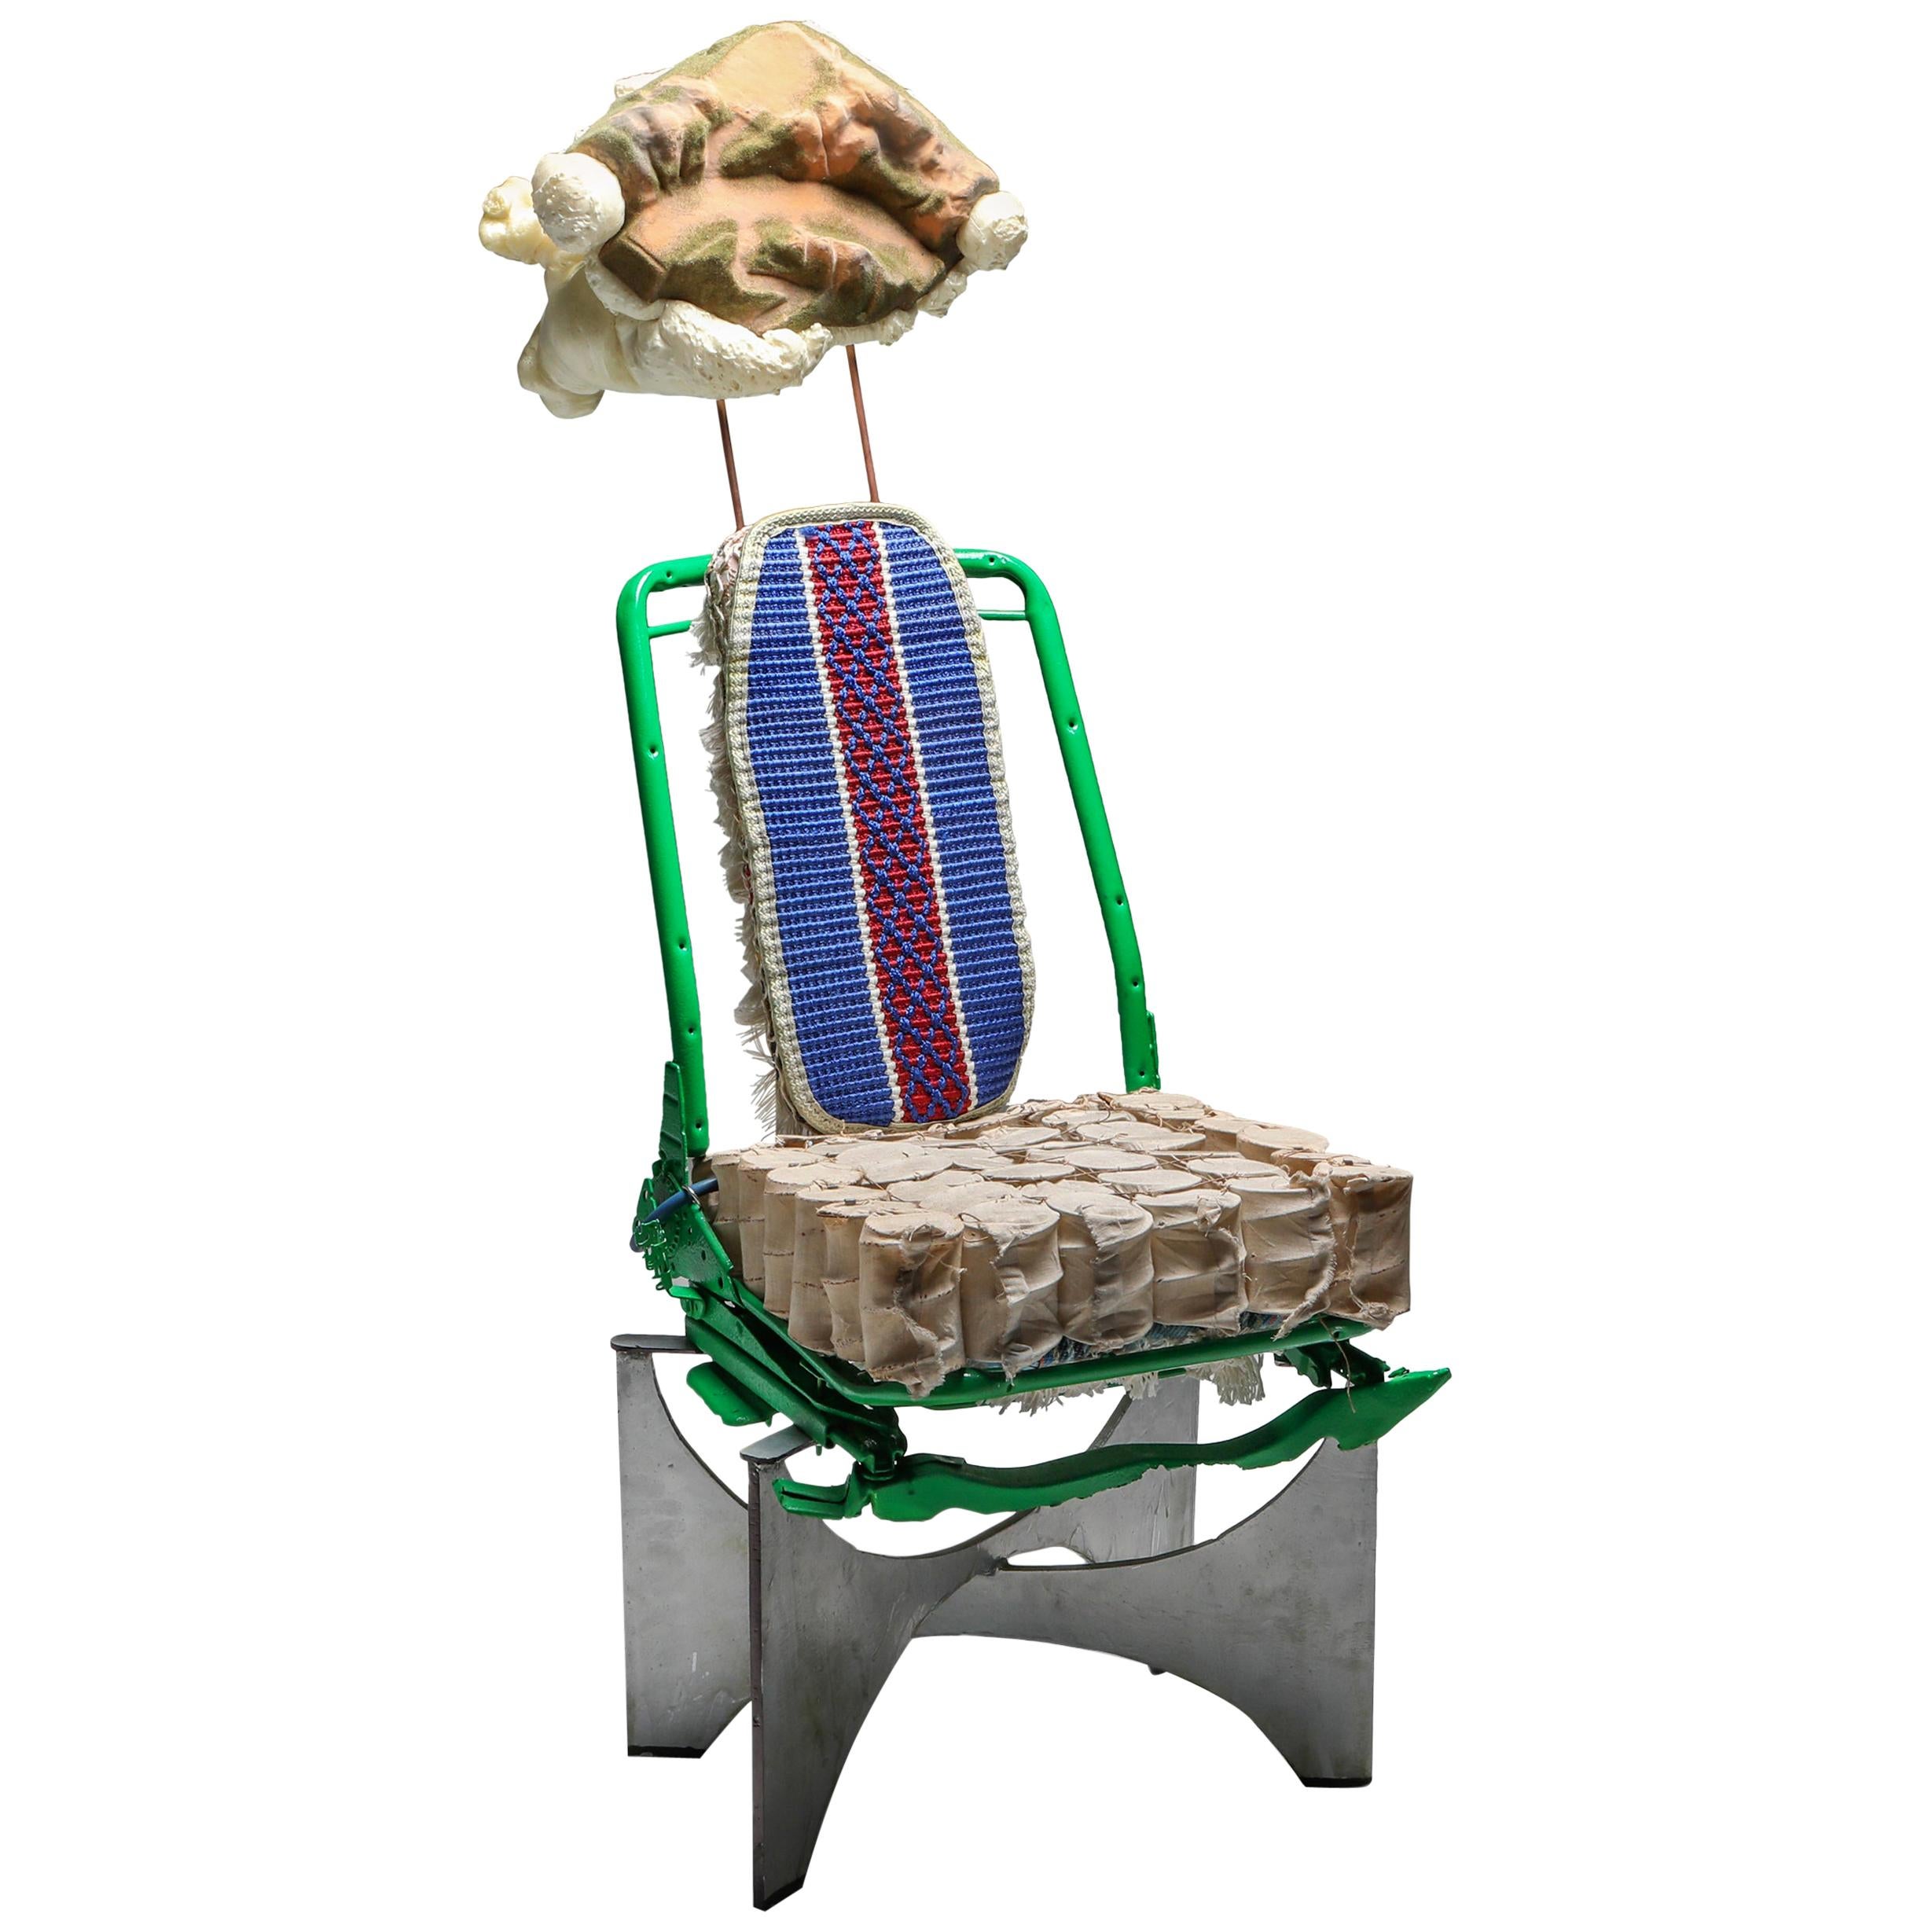 'The King of Tiébélé' Assemblage Chair, with Backrest from Tiébélé, Lionel Jadot